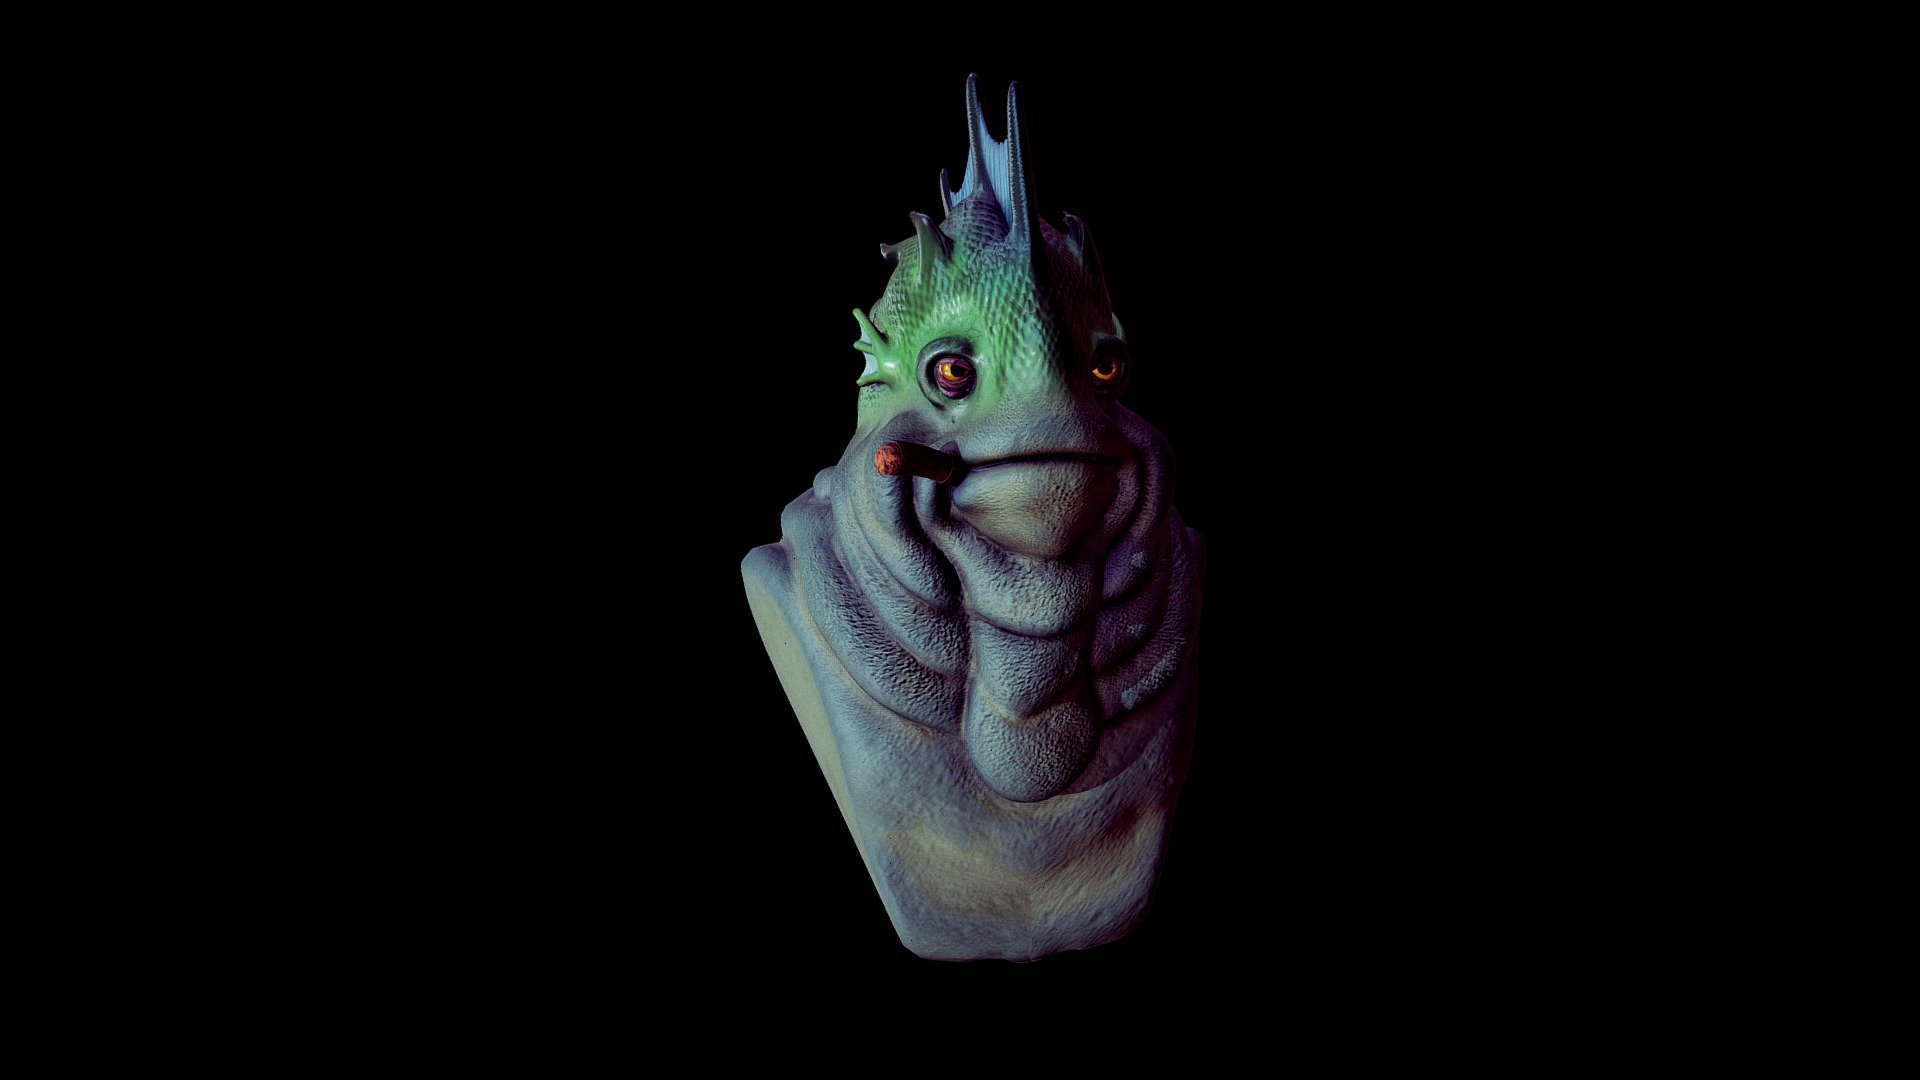 ArtStation - Nightmare - Finger Creature